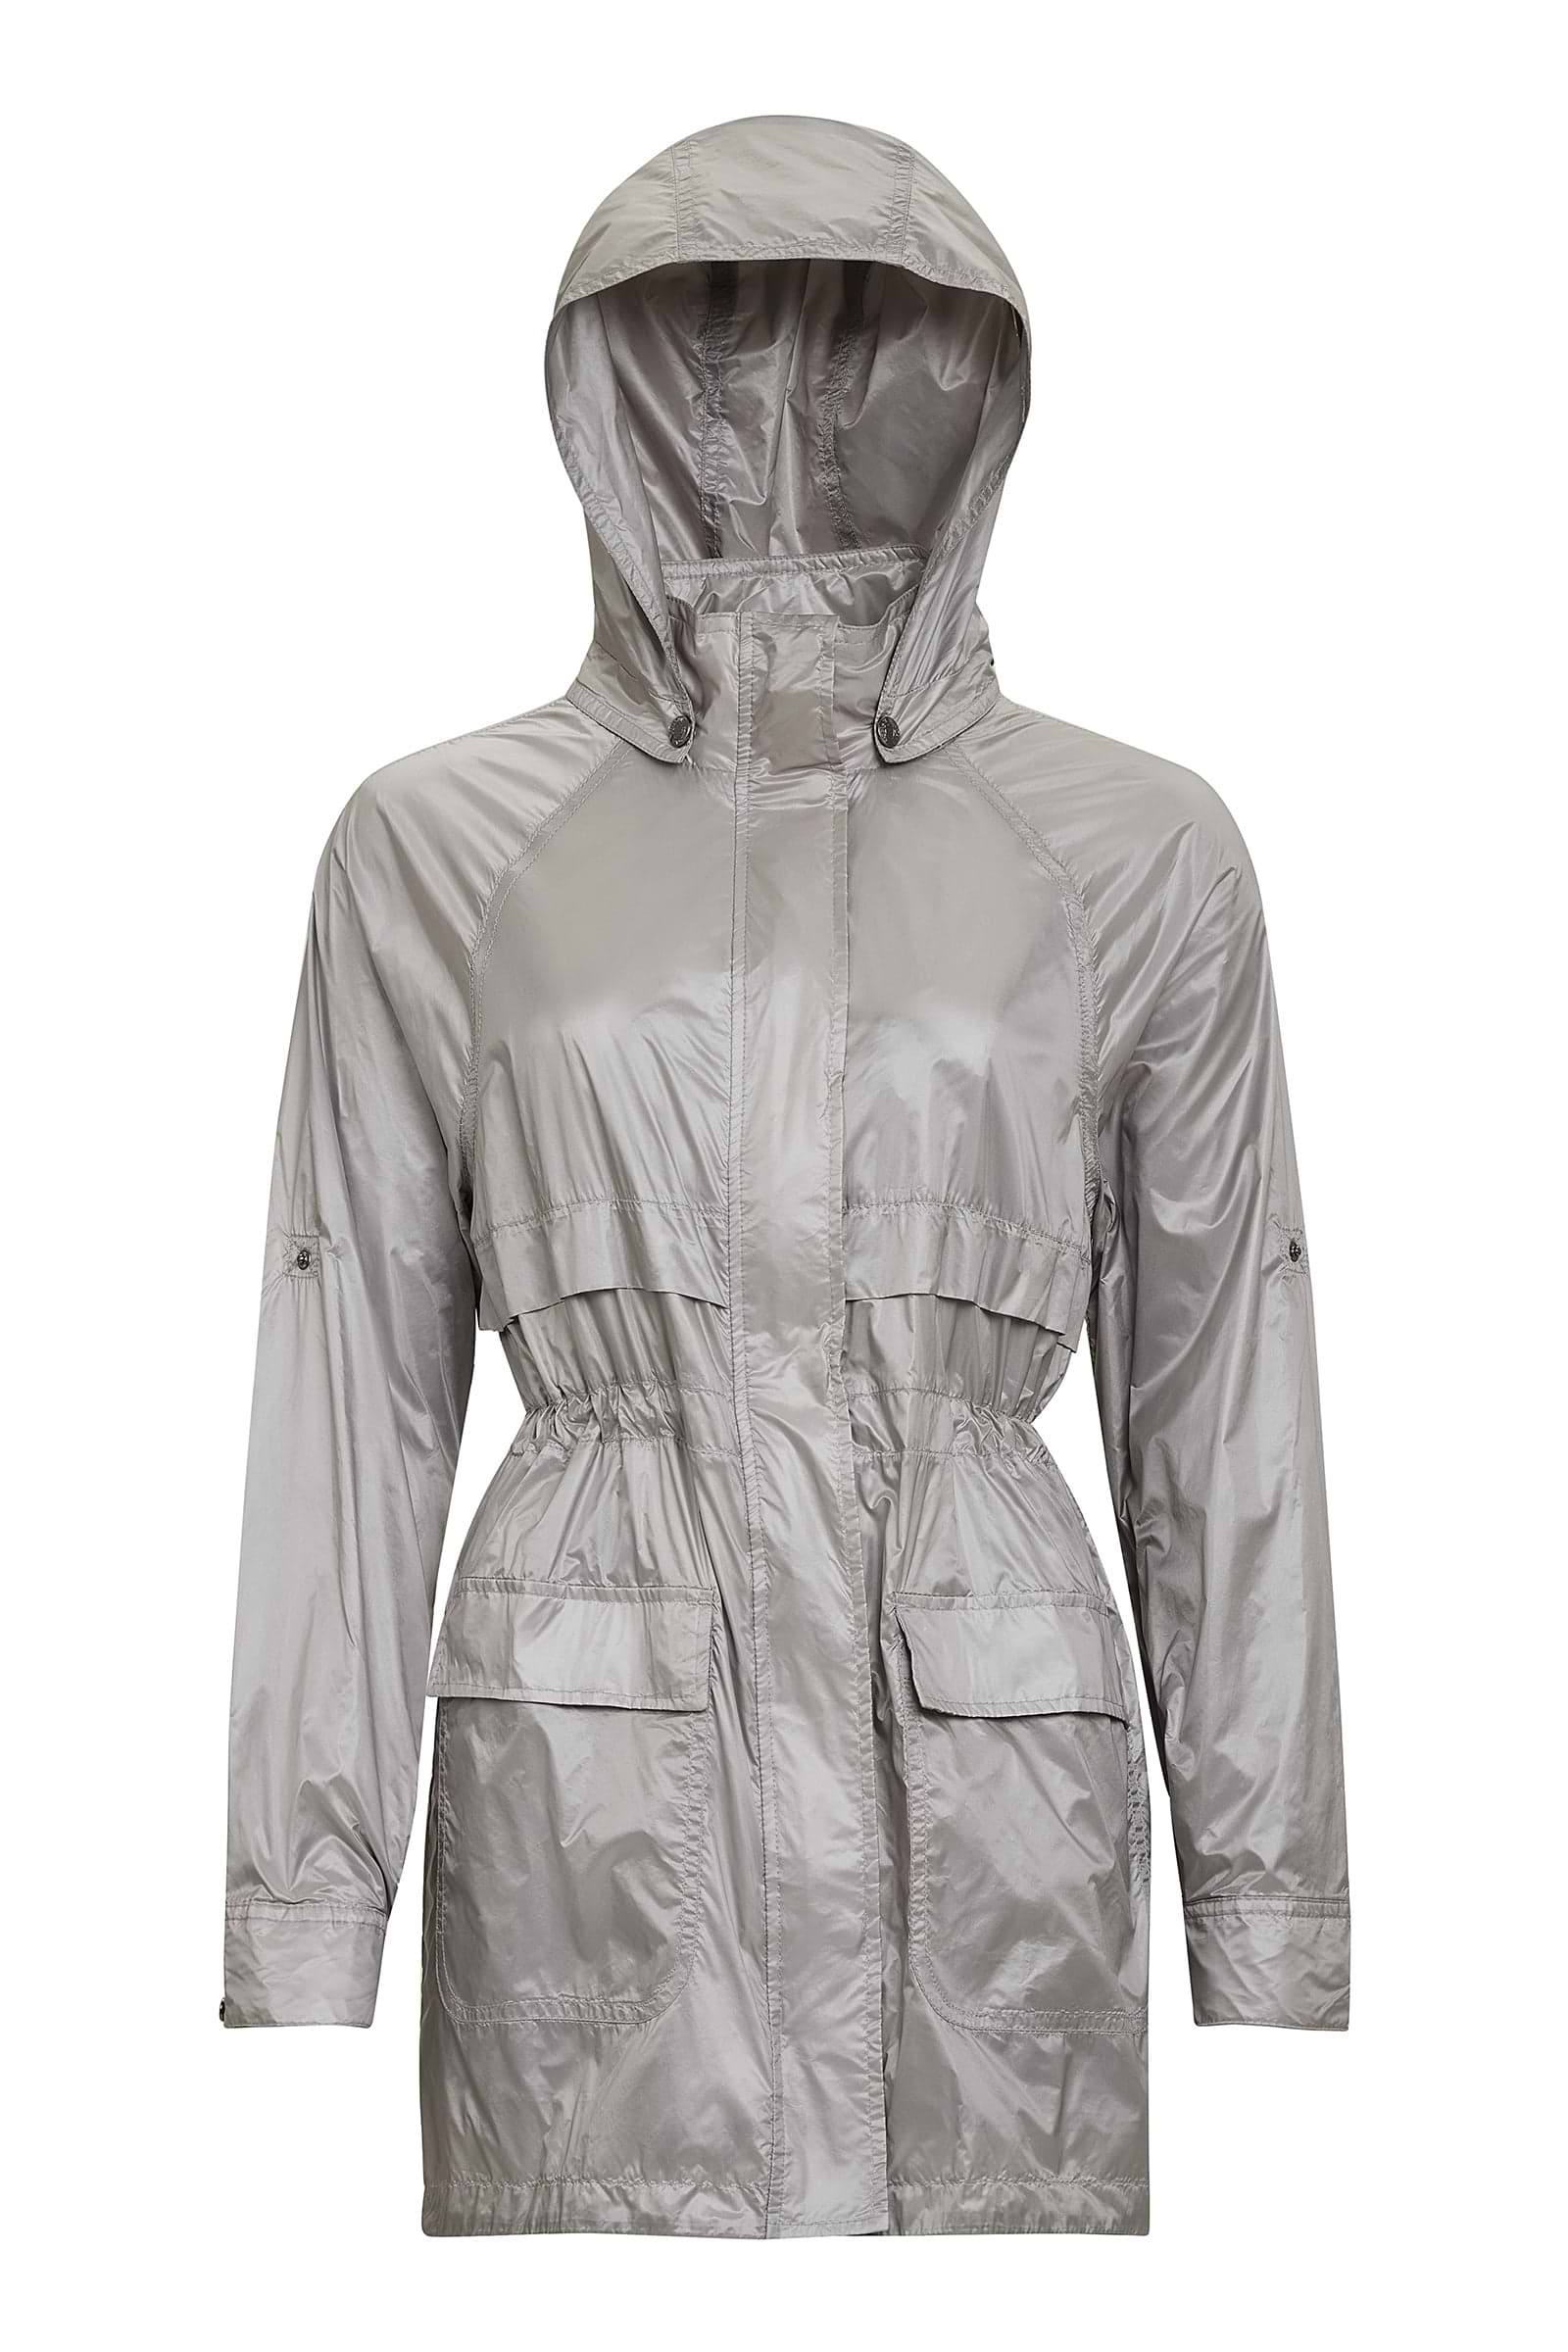 The Best Travel Jacket. Flat Lay of a Ramona Windbreaker Jacket in Silver Grey.